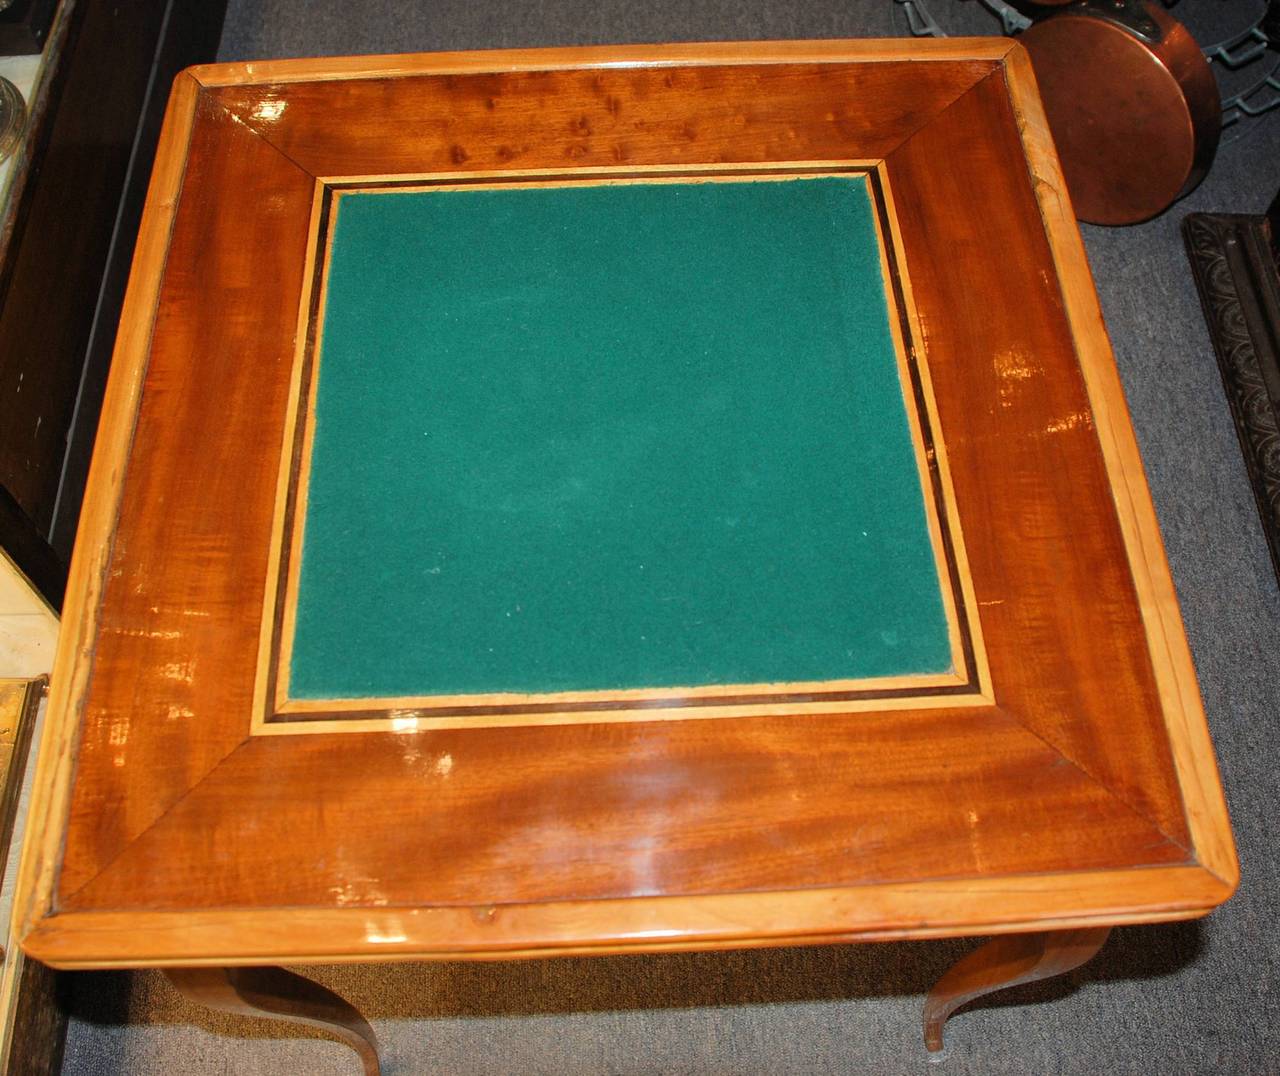 British Antique Game Table